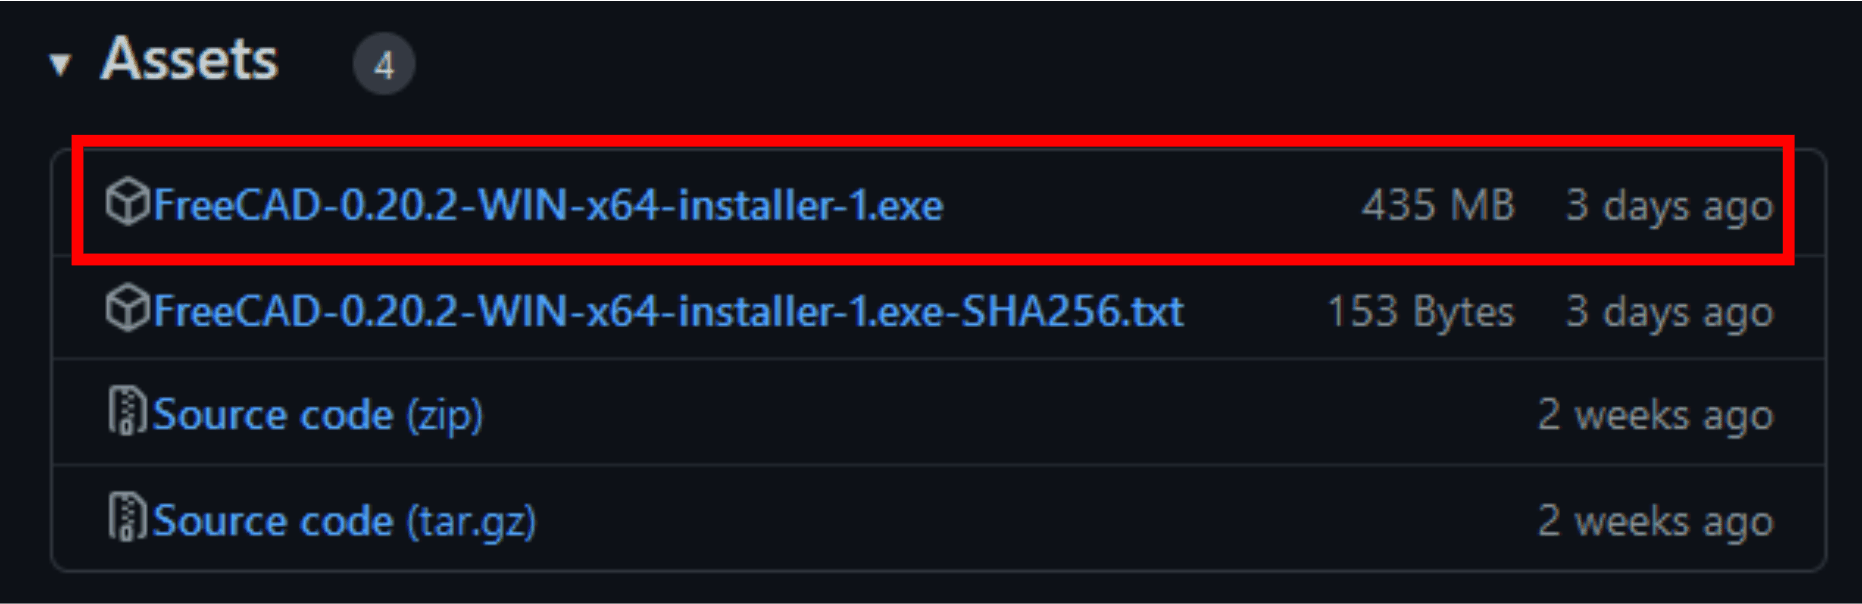 「 FreeCAD-0.20.2-WIN-x64-installer-1.exe 」をダウンロードしました。